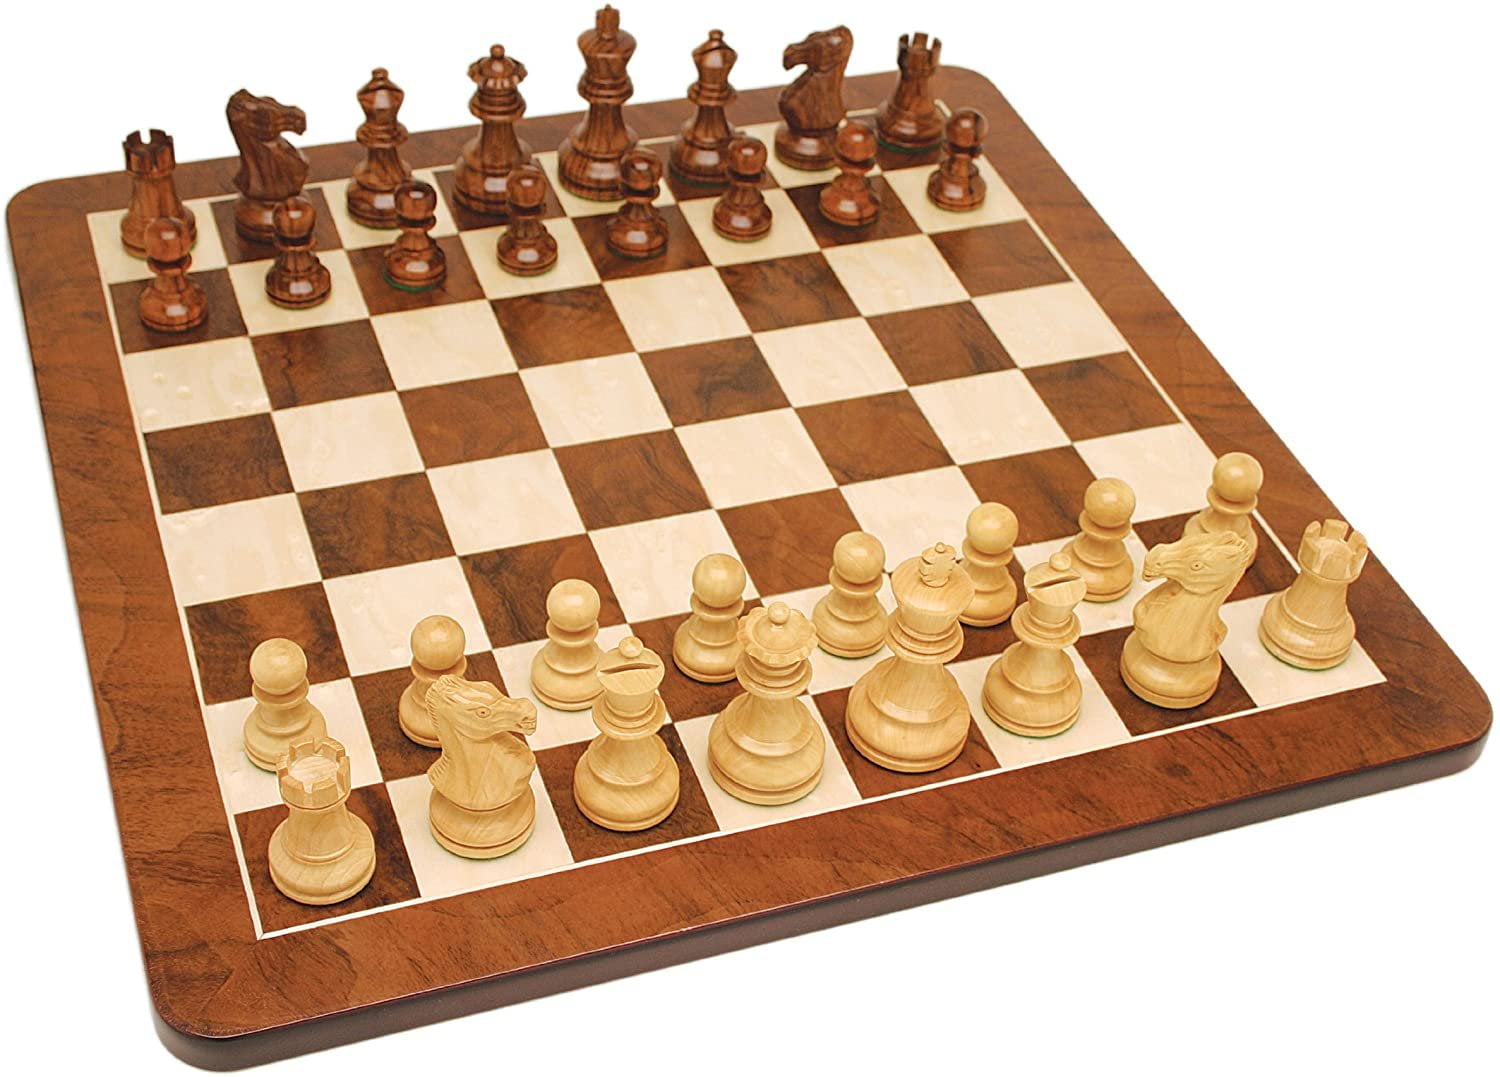  Luxury & Decorative Premium Chess Game Set Handmade